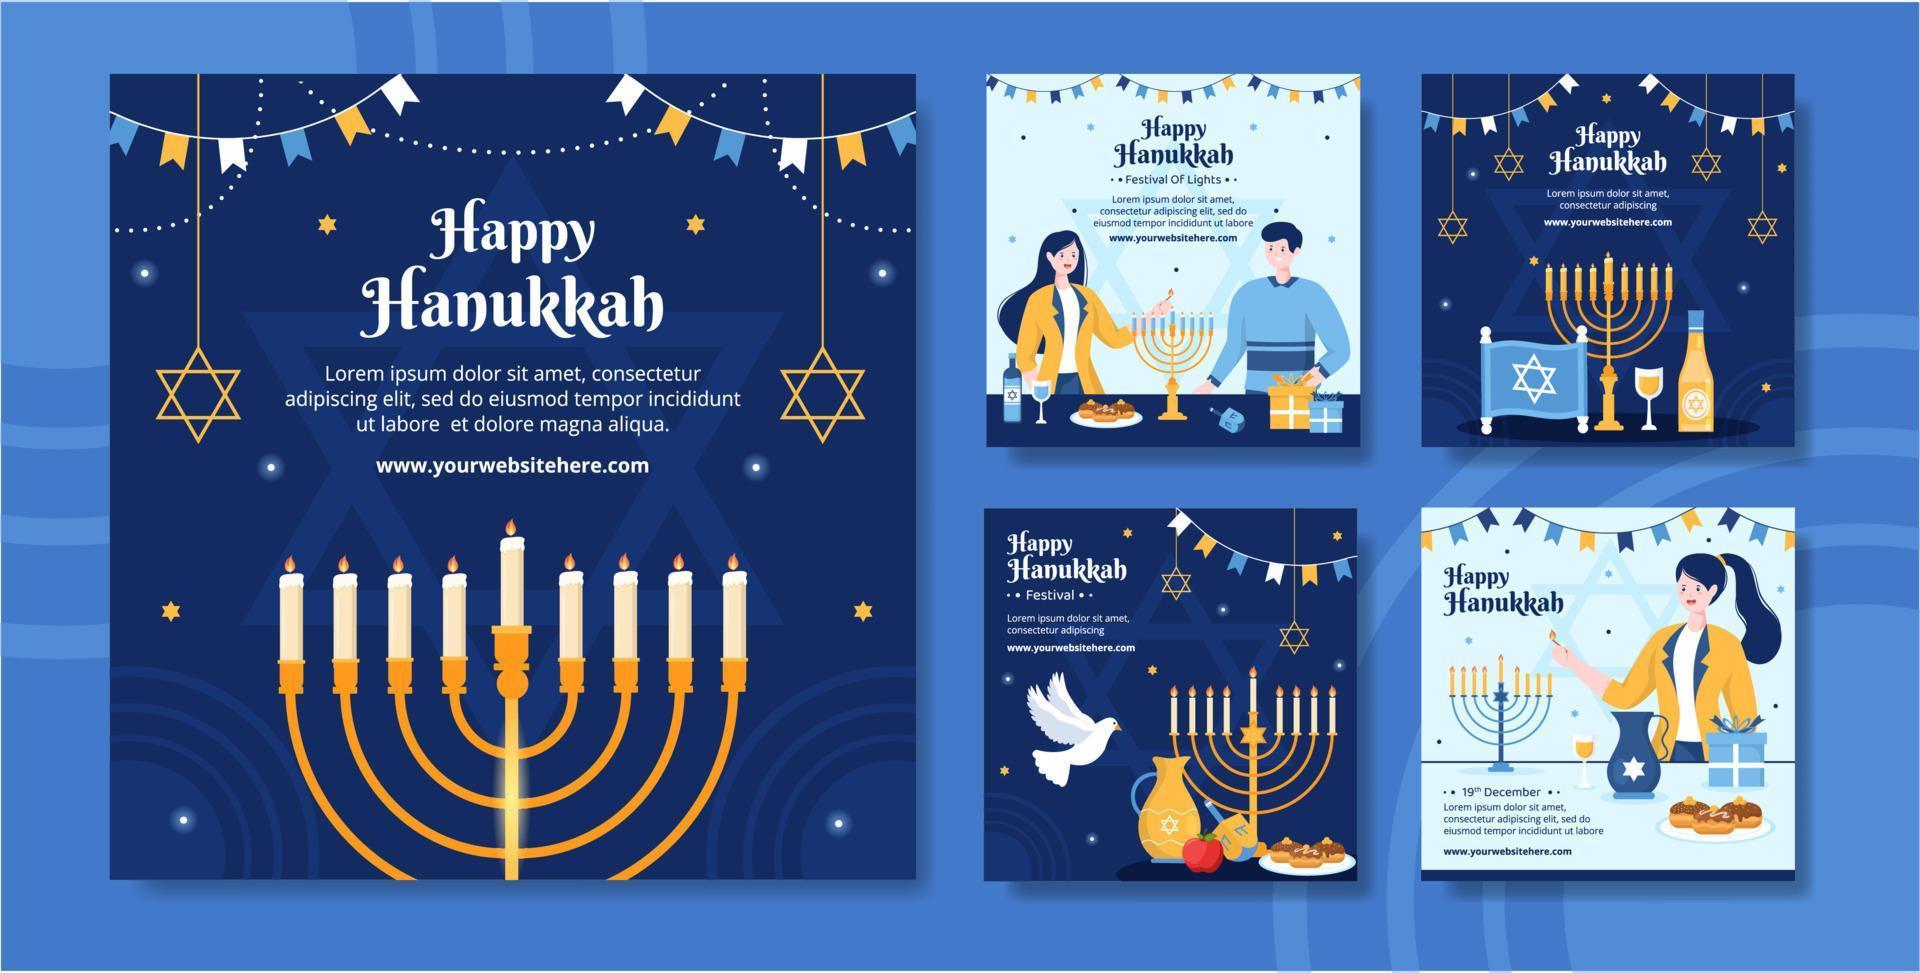 feliz fiesta judía de hanukkah plantilla de publicación en redes sociales ilustración plana de dibujos animados dibujados a mano vector